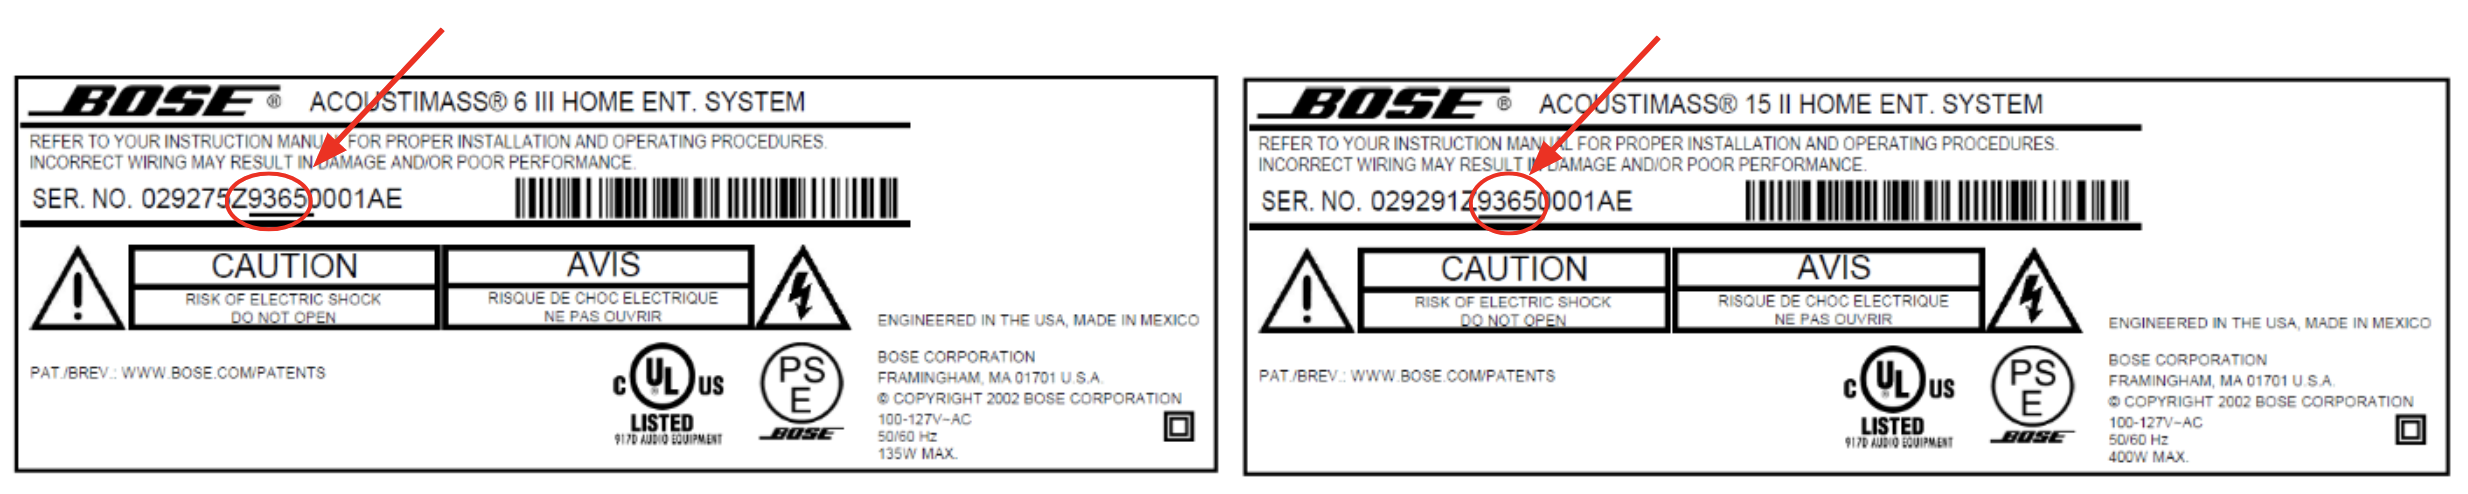 Bose Recalls Acoustimass®, Lifestyle® and Companion™ Bass Modules